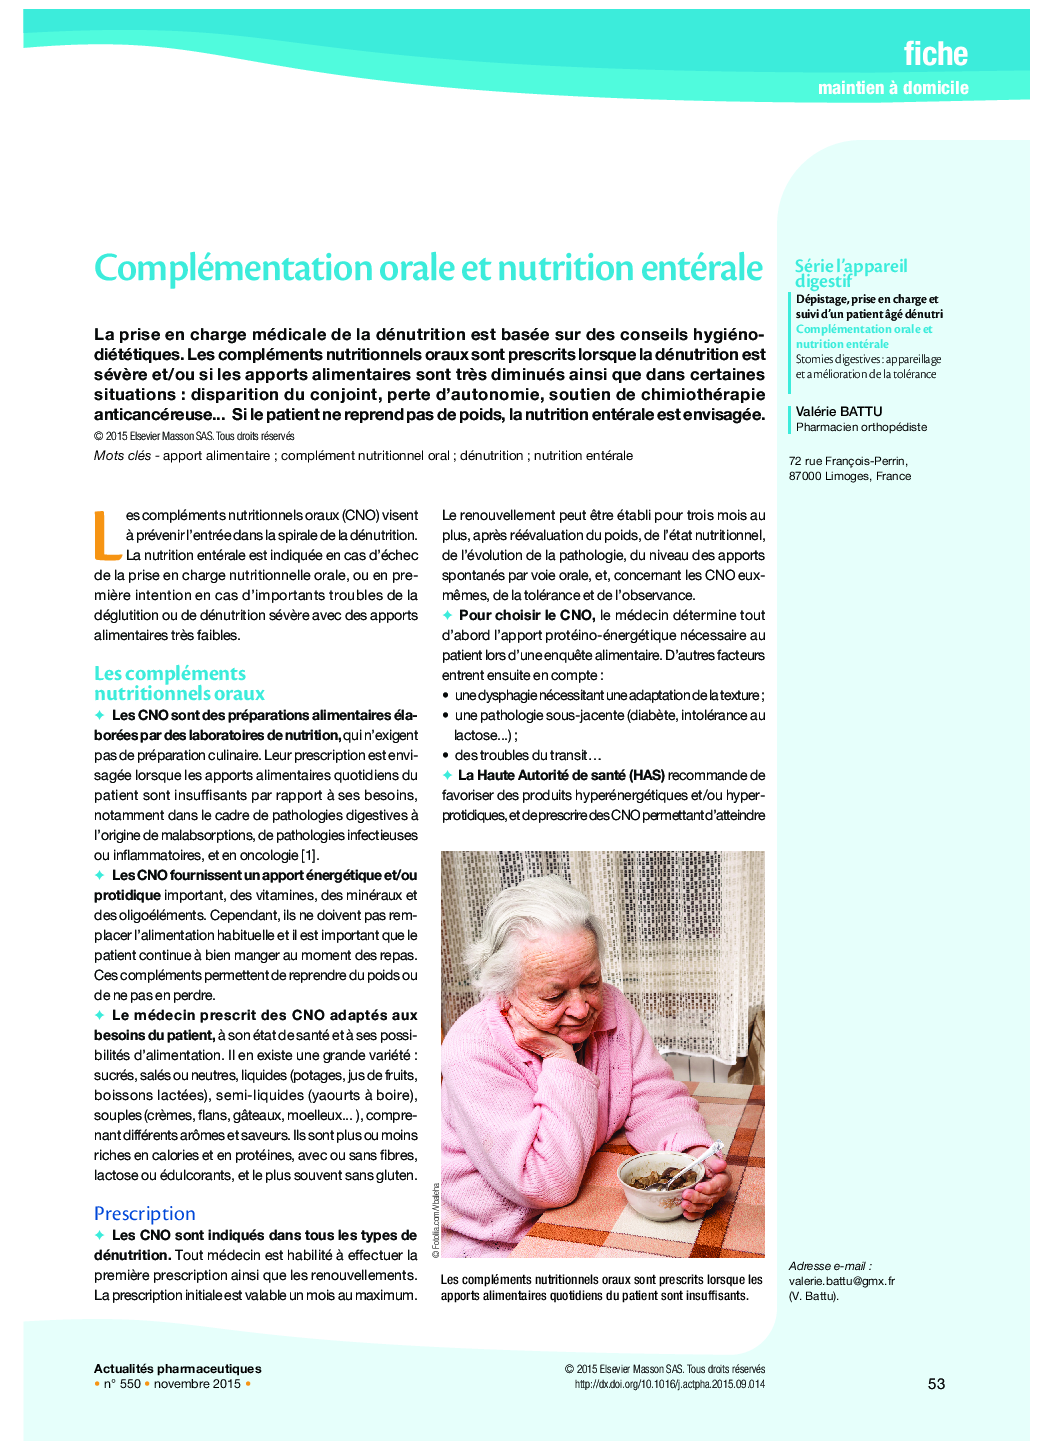 Complémentation orale et nutrition entérale